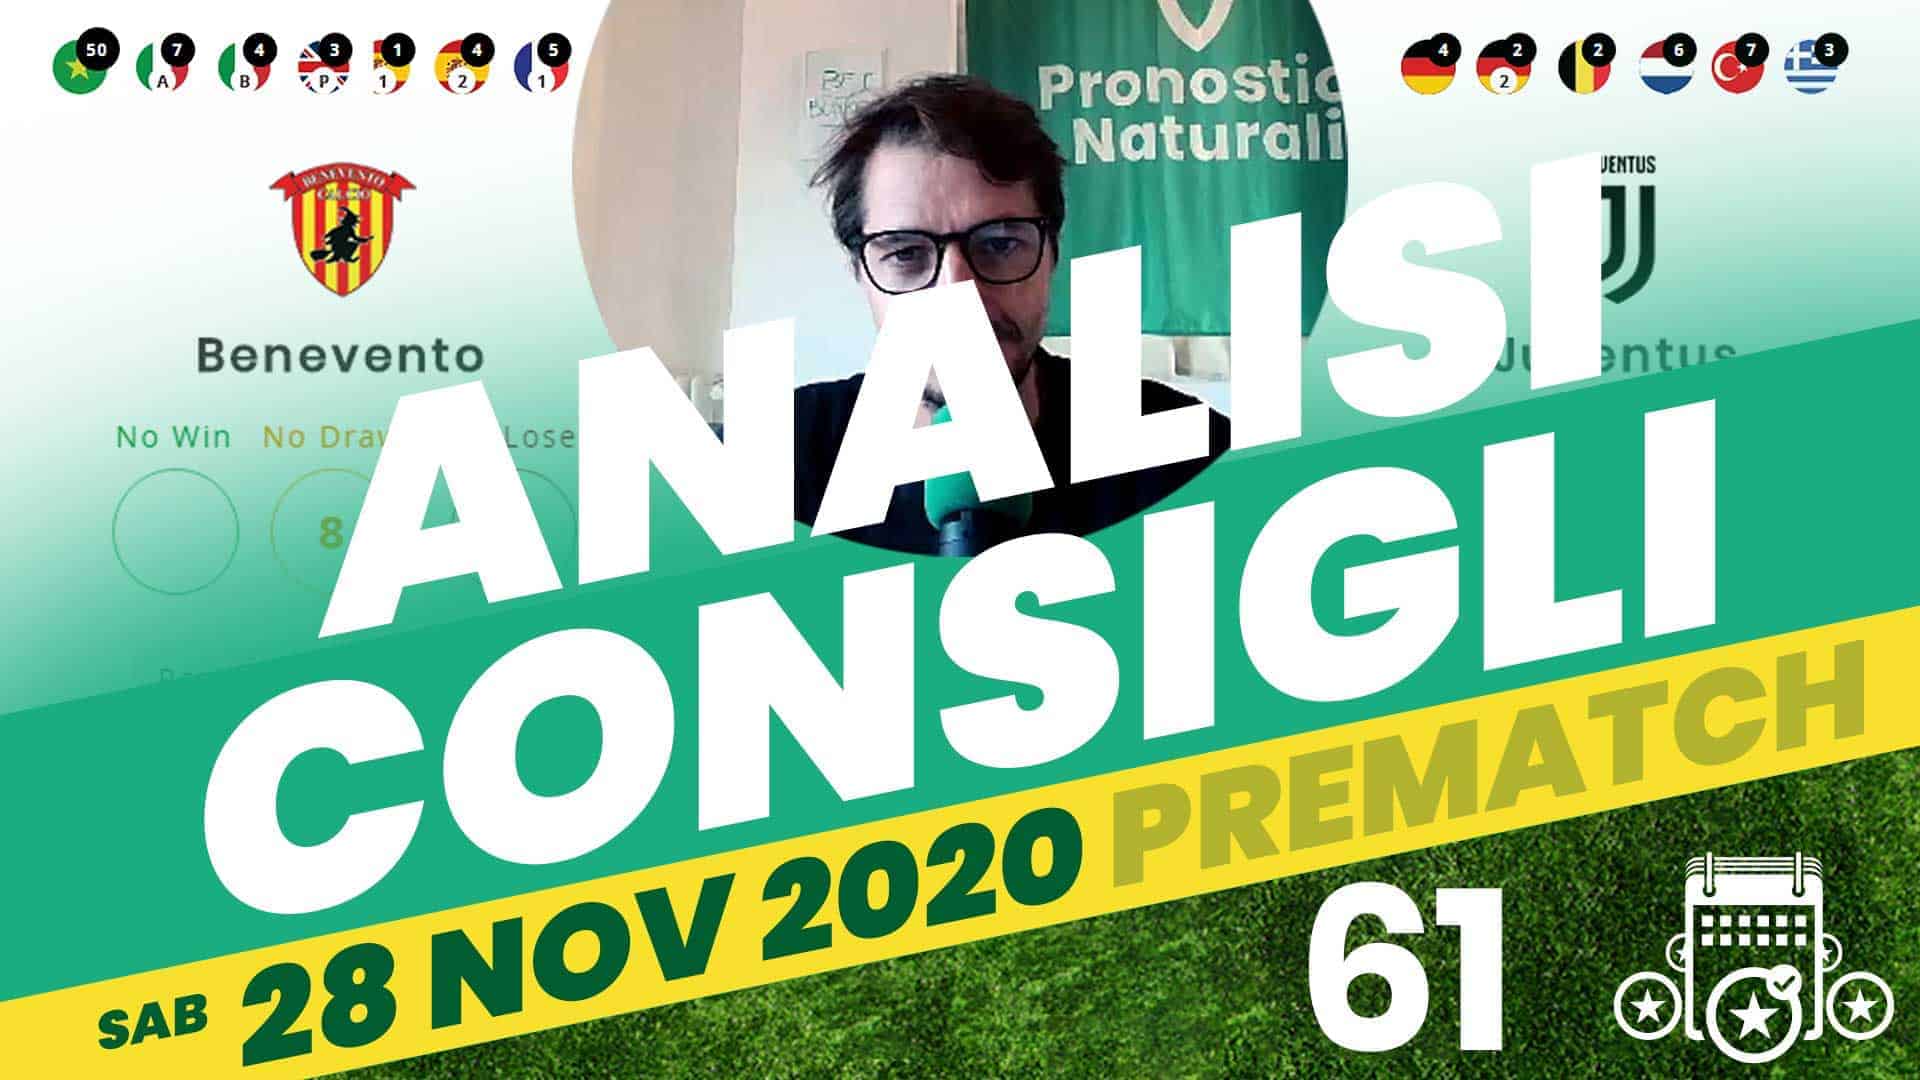 Pronostici Naturali Video Analisi Scommesse Betting Calcio Pre Partite Sabato 28 Novembre 2020